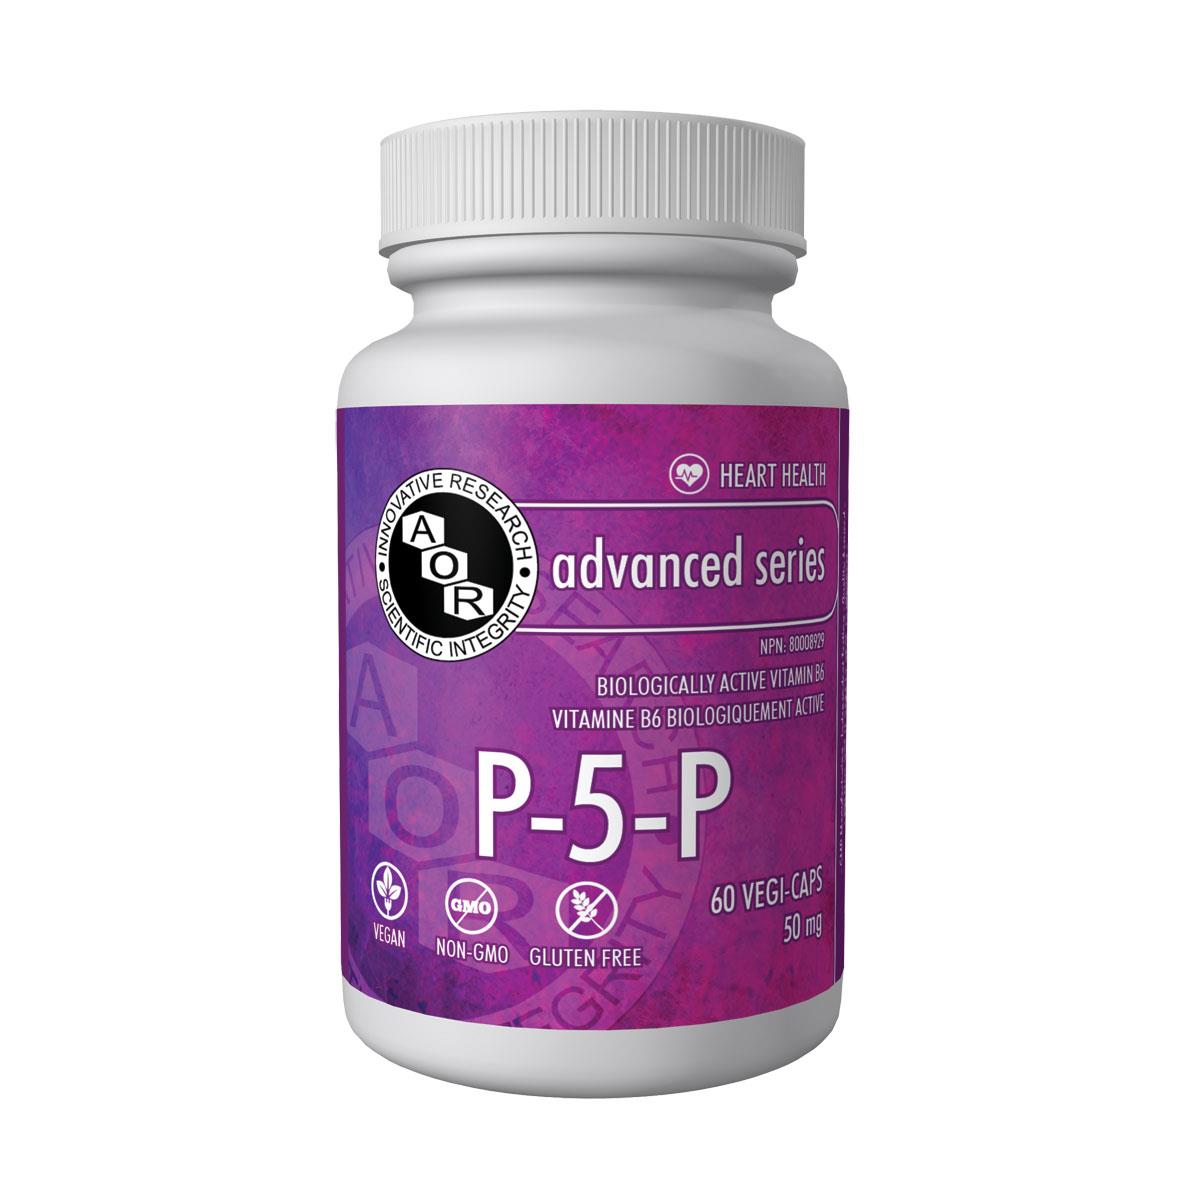 AOR P-5-P (Vitamin B6) (50 mg / 60 Vegetable Capsules)